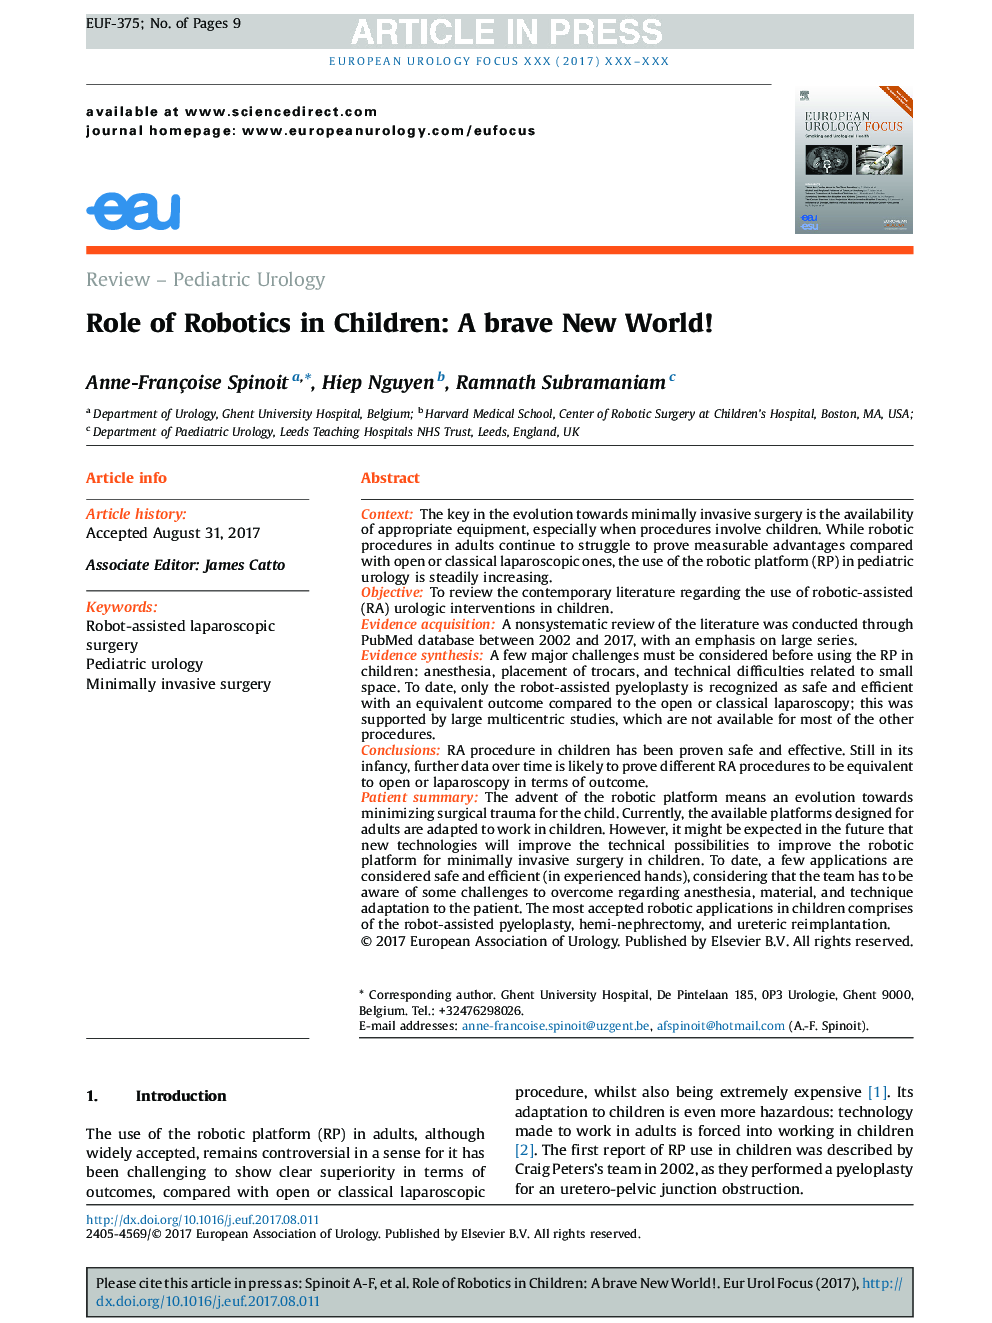 نقش روباتیک در کودکان: یک جهان جدید شجاع! 